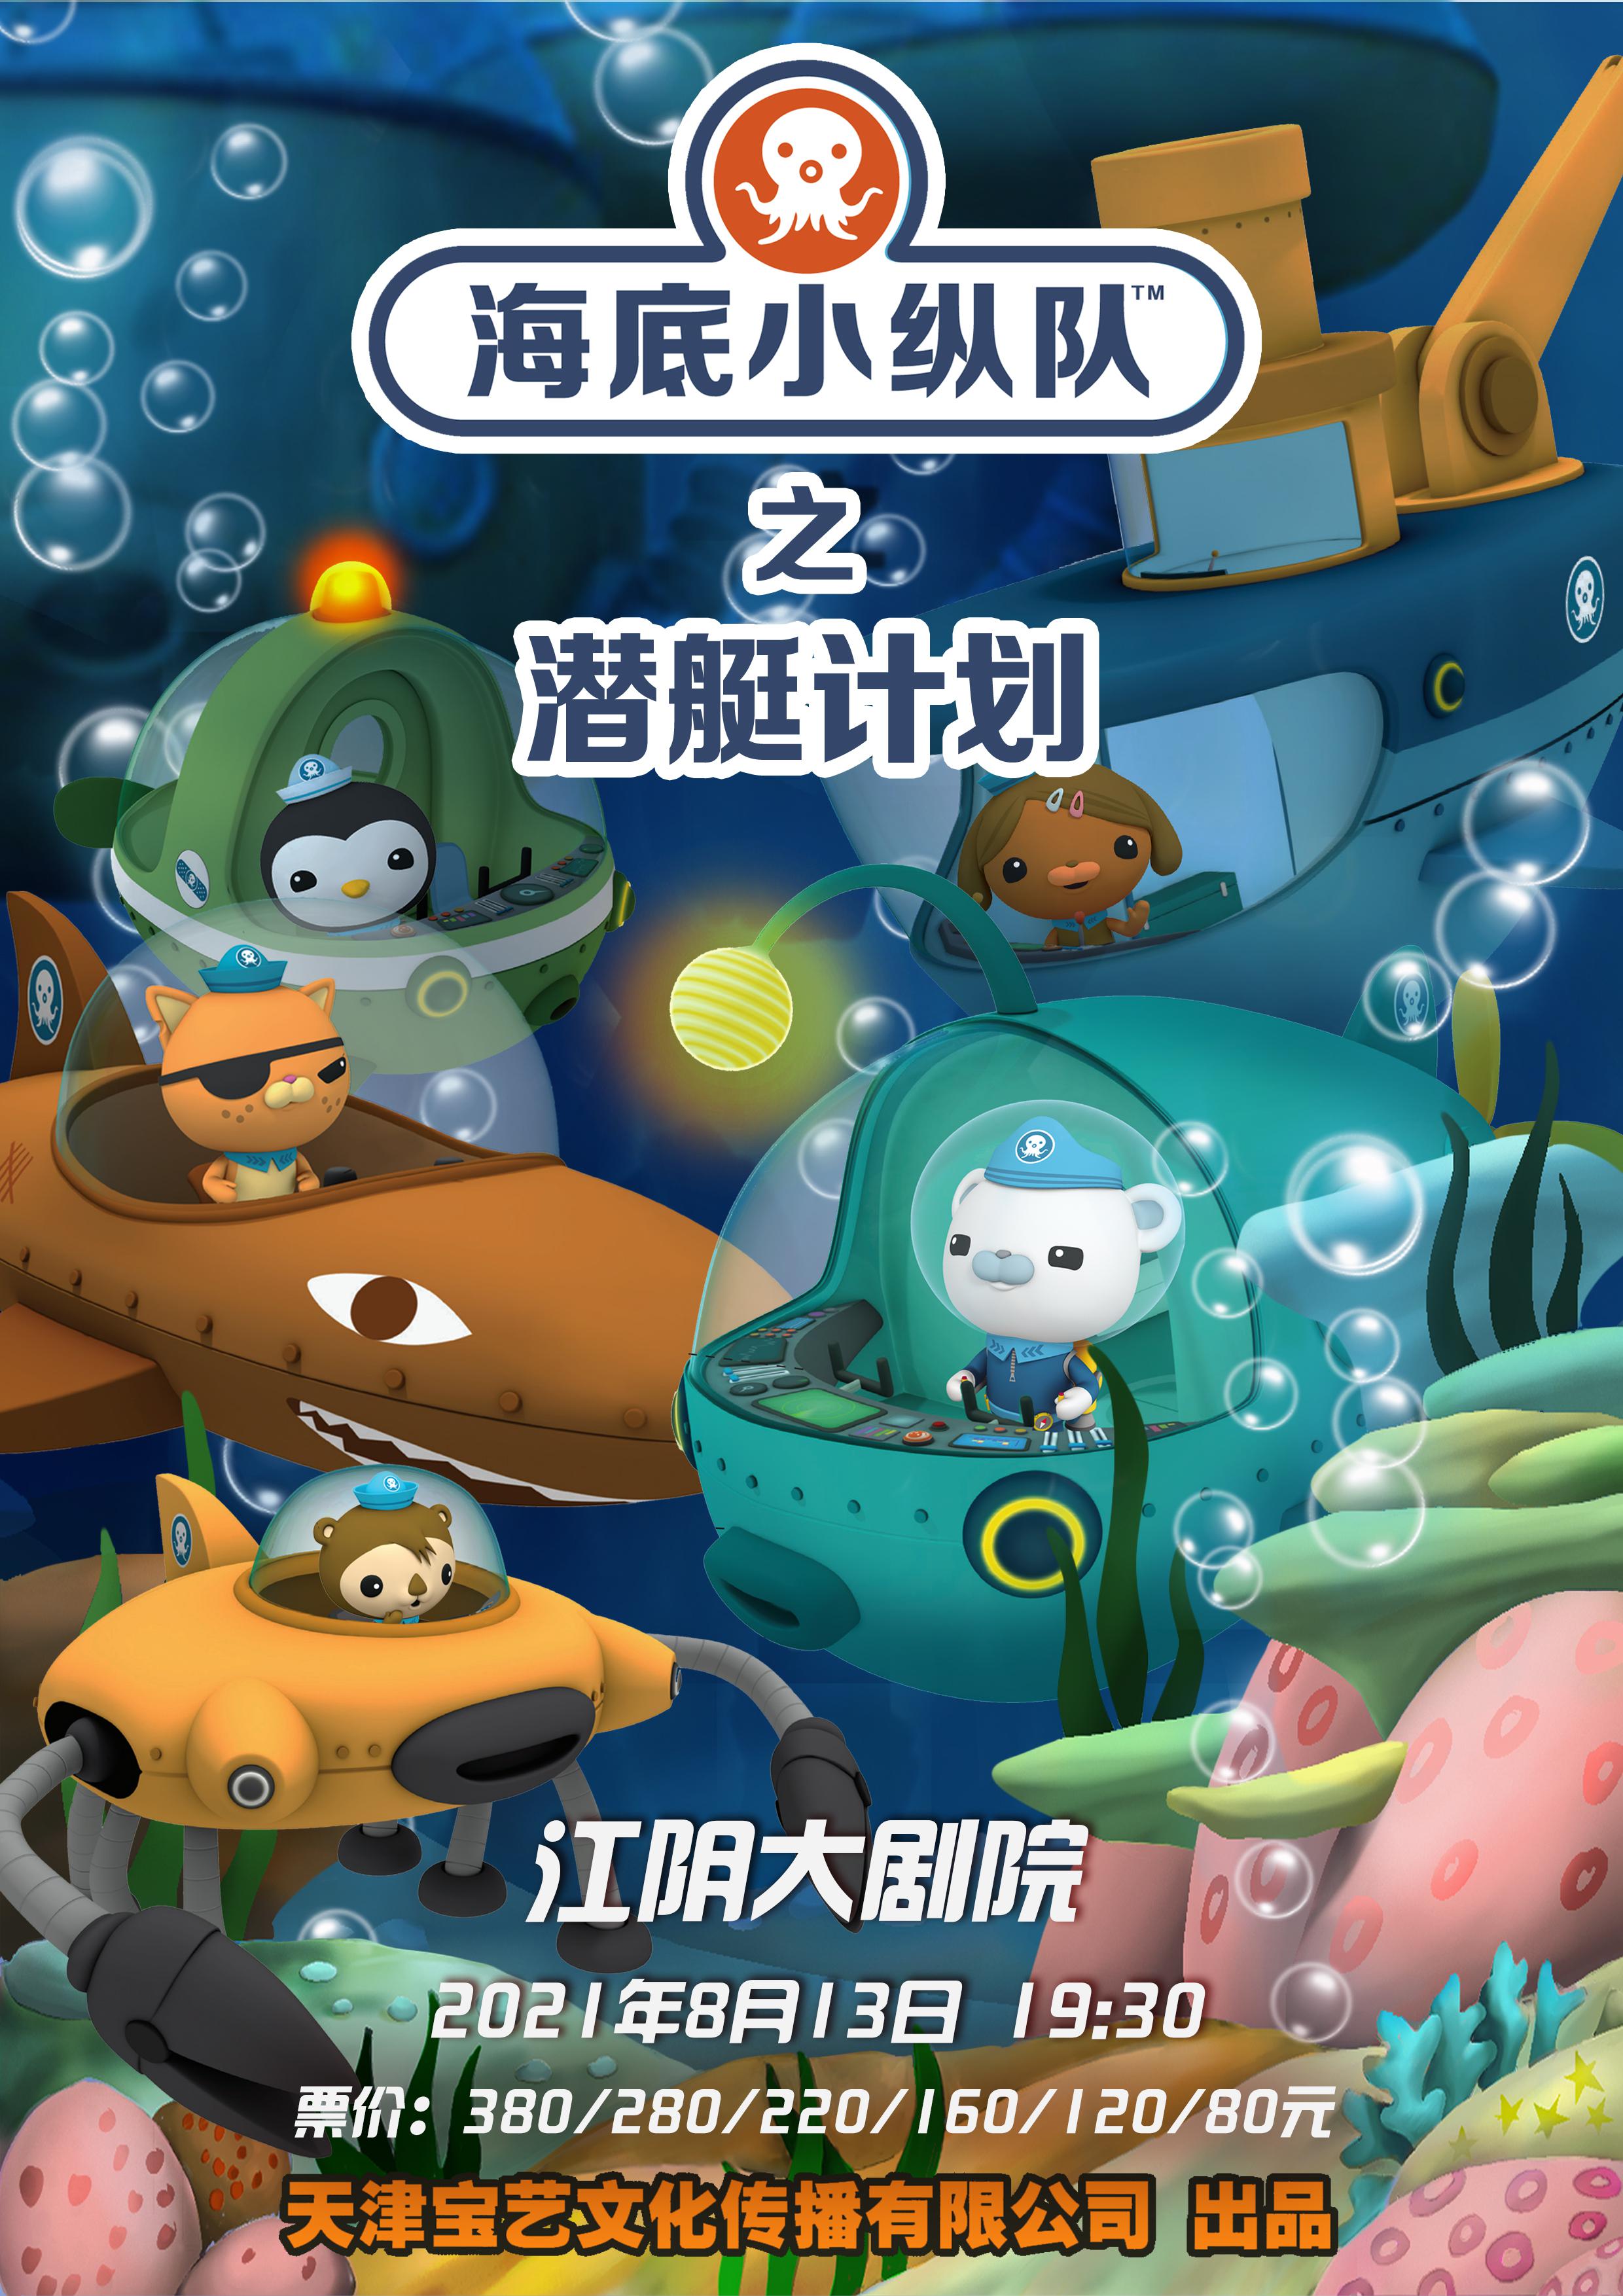 【江阴】全国正版授权大型互动式冒险儿童舞台剧《海底小纵队之潜艇计划》